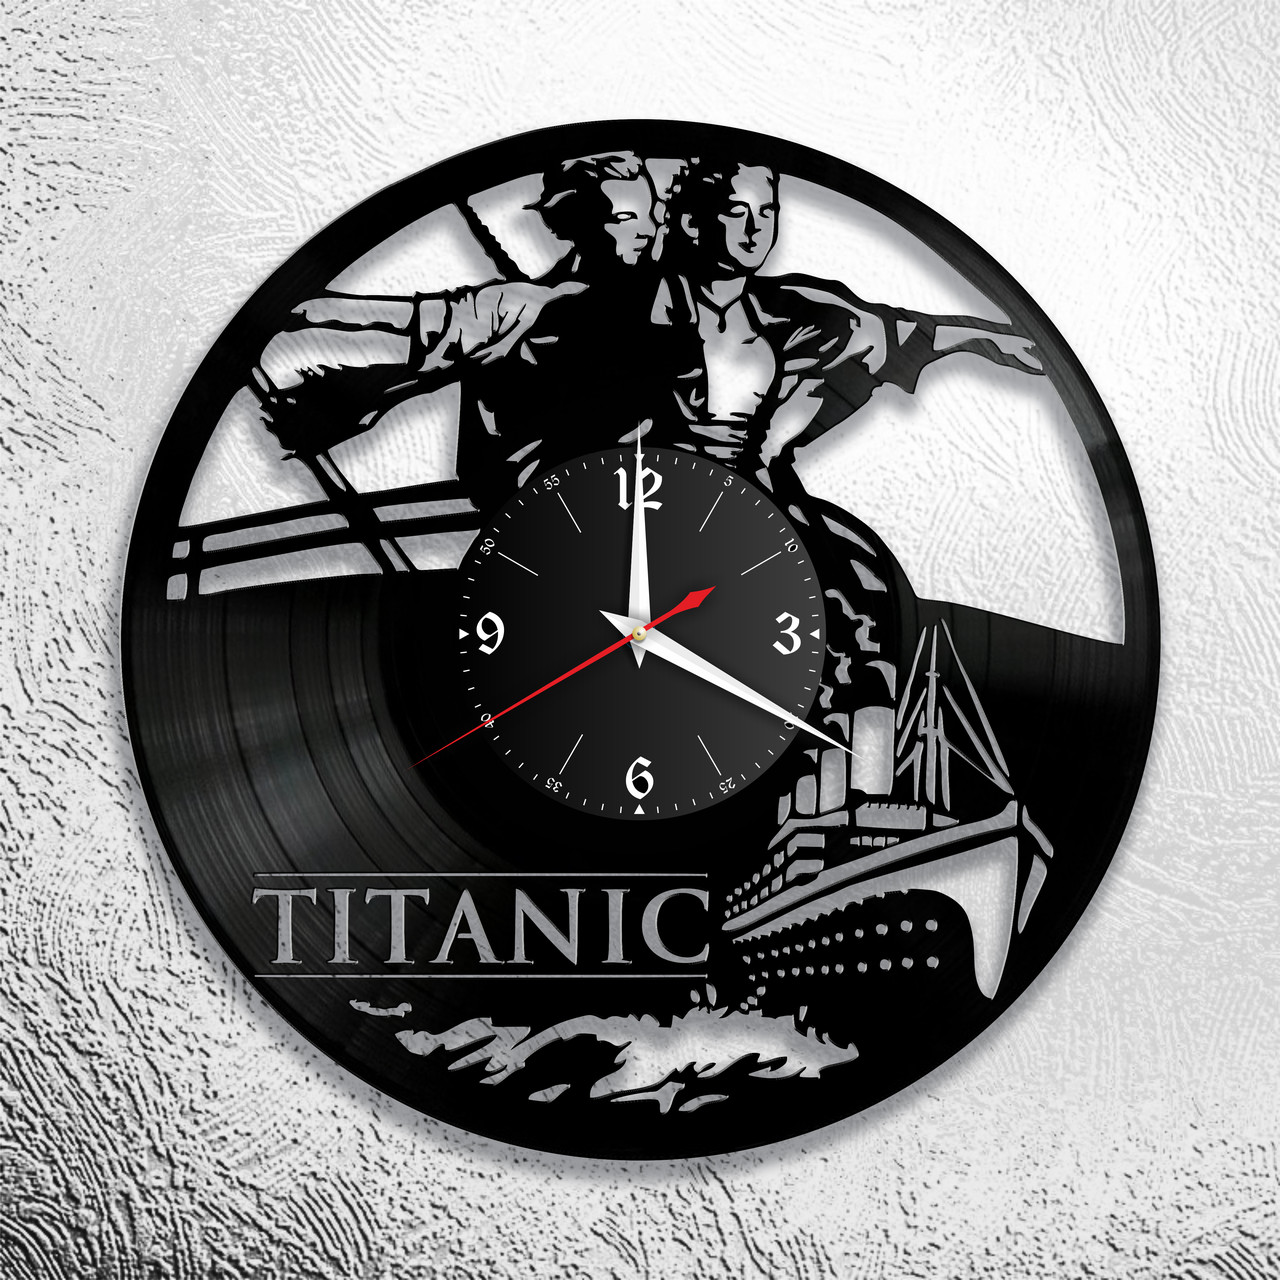 Оригинальные часы из виниловых пластинок  "Титаник"  версия 2